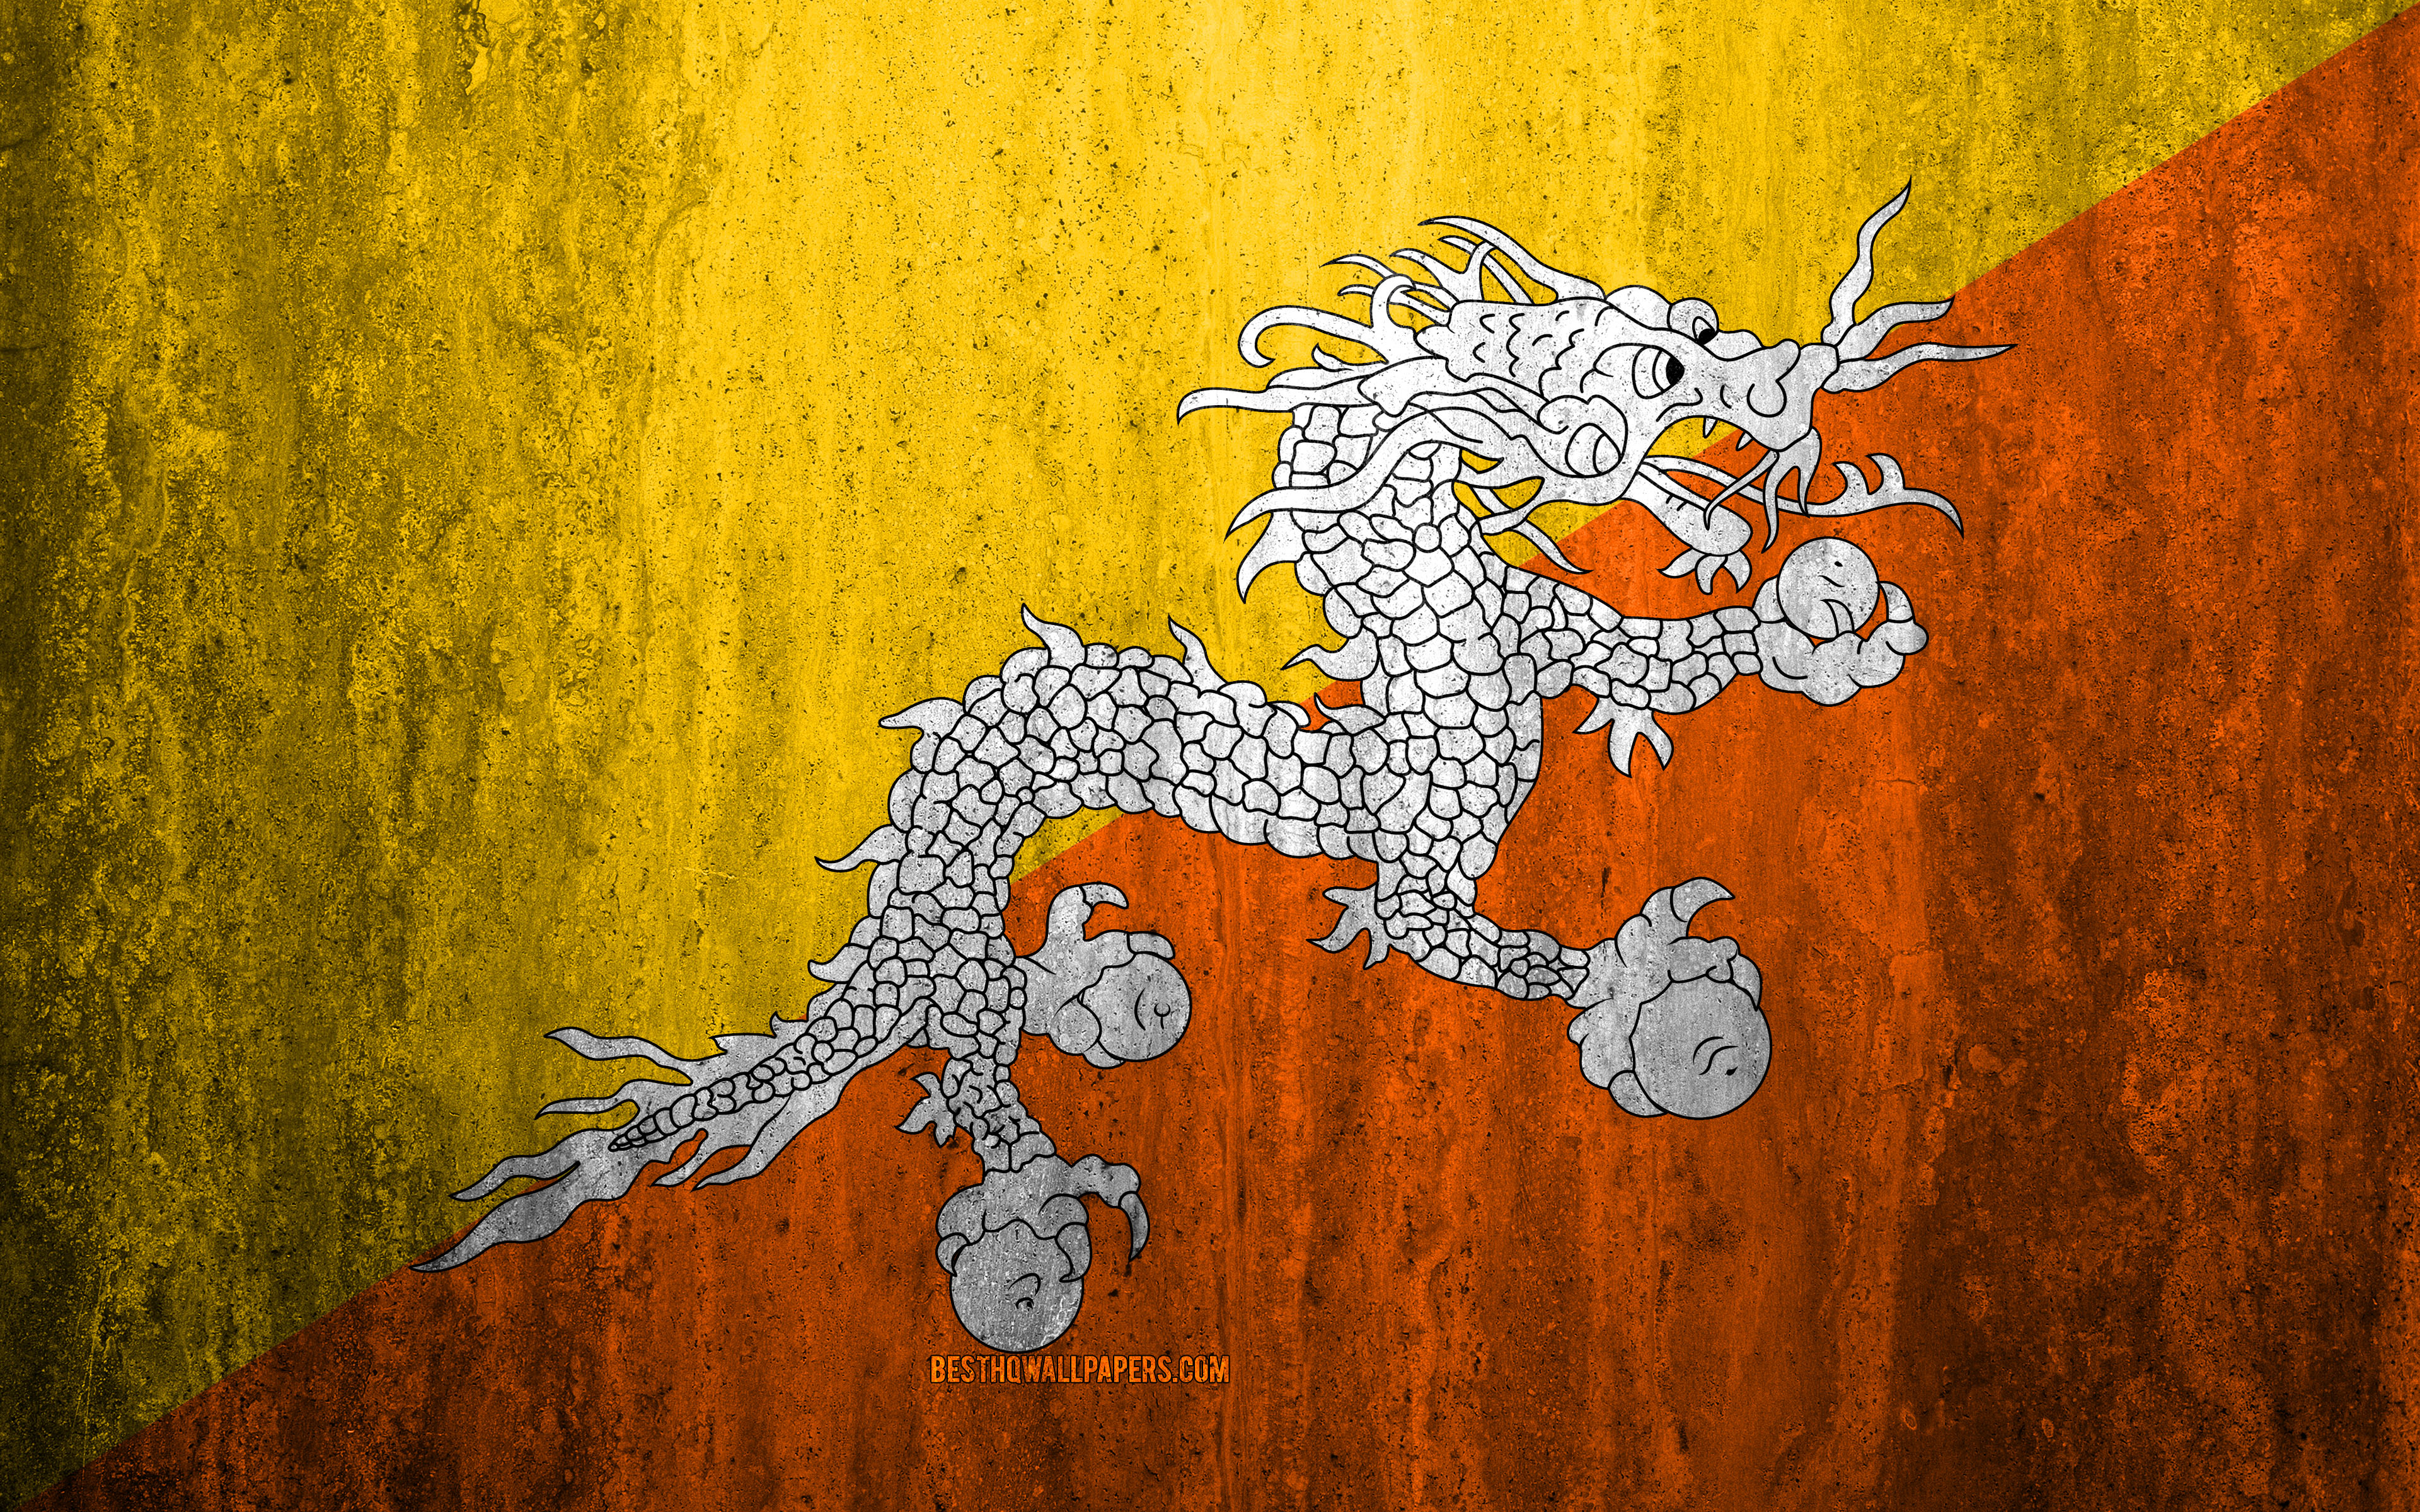 Wallpaper Flag Of Bhutan 4k Stone Background Grunge